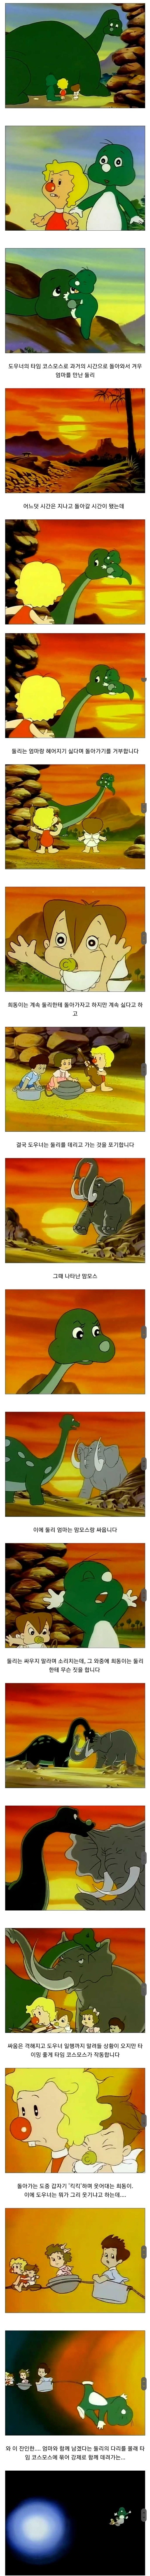 어린이들에게 충격을 줘서 하차하게 만든 한국 만화